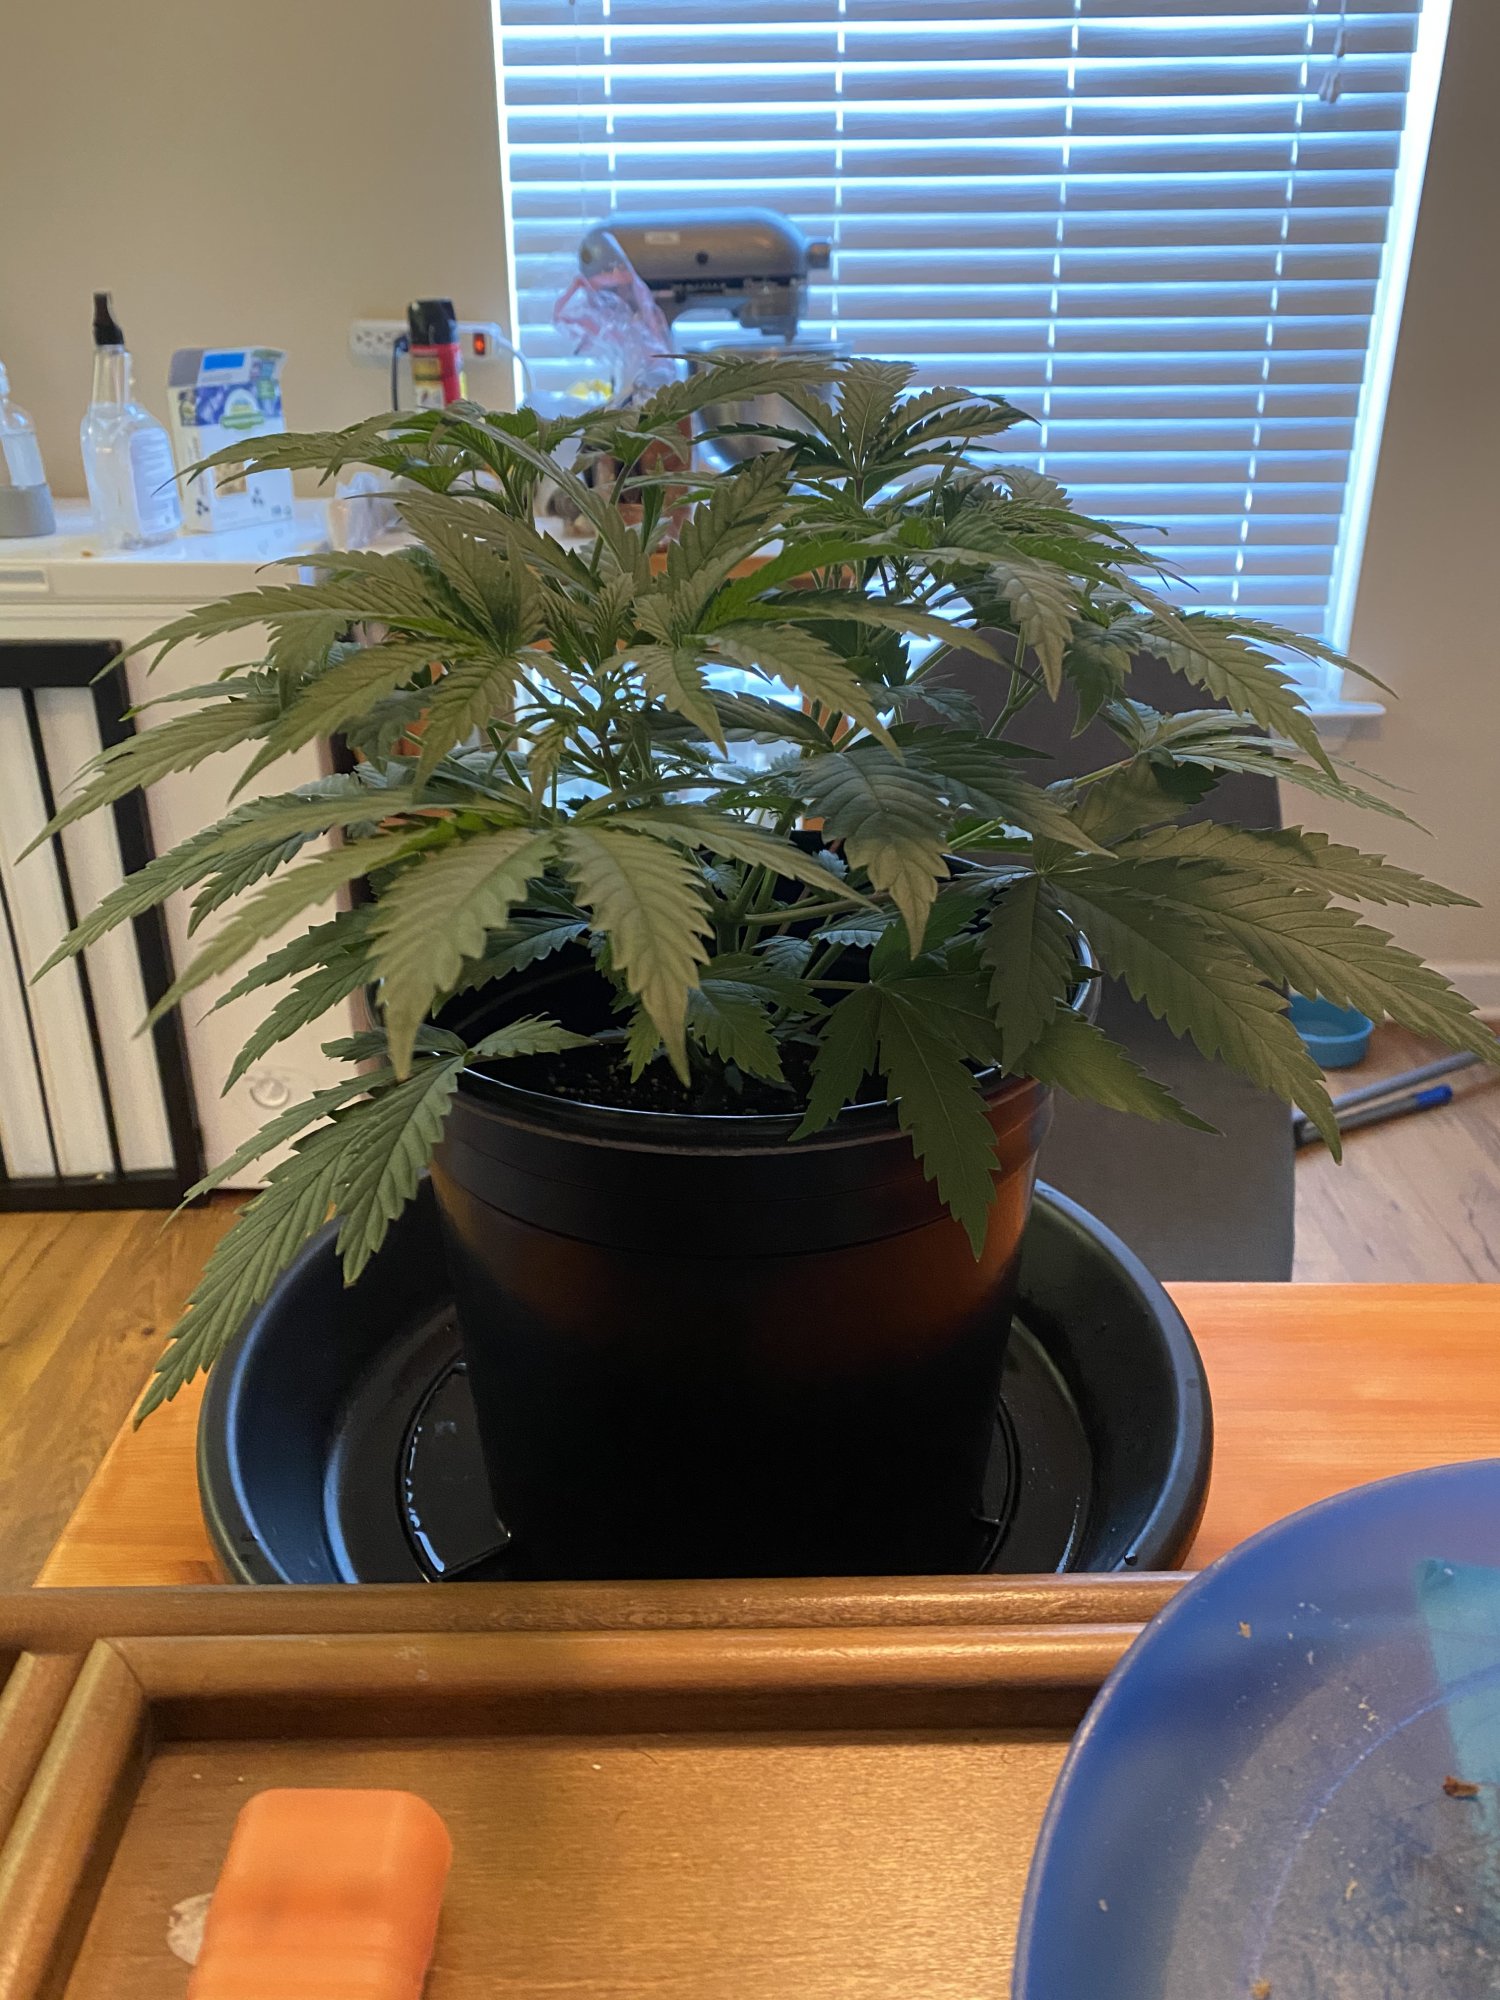 New grower   first grow update 5